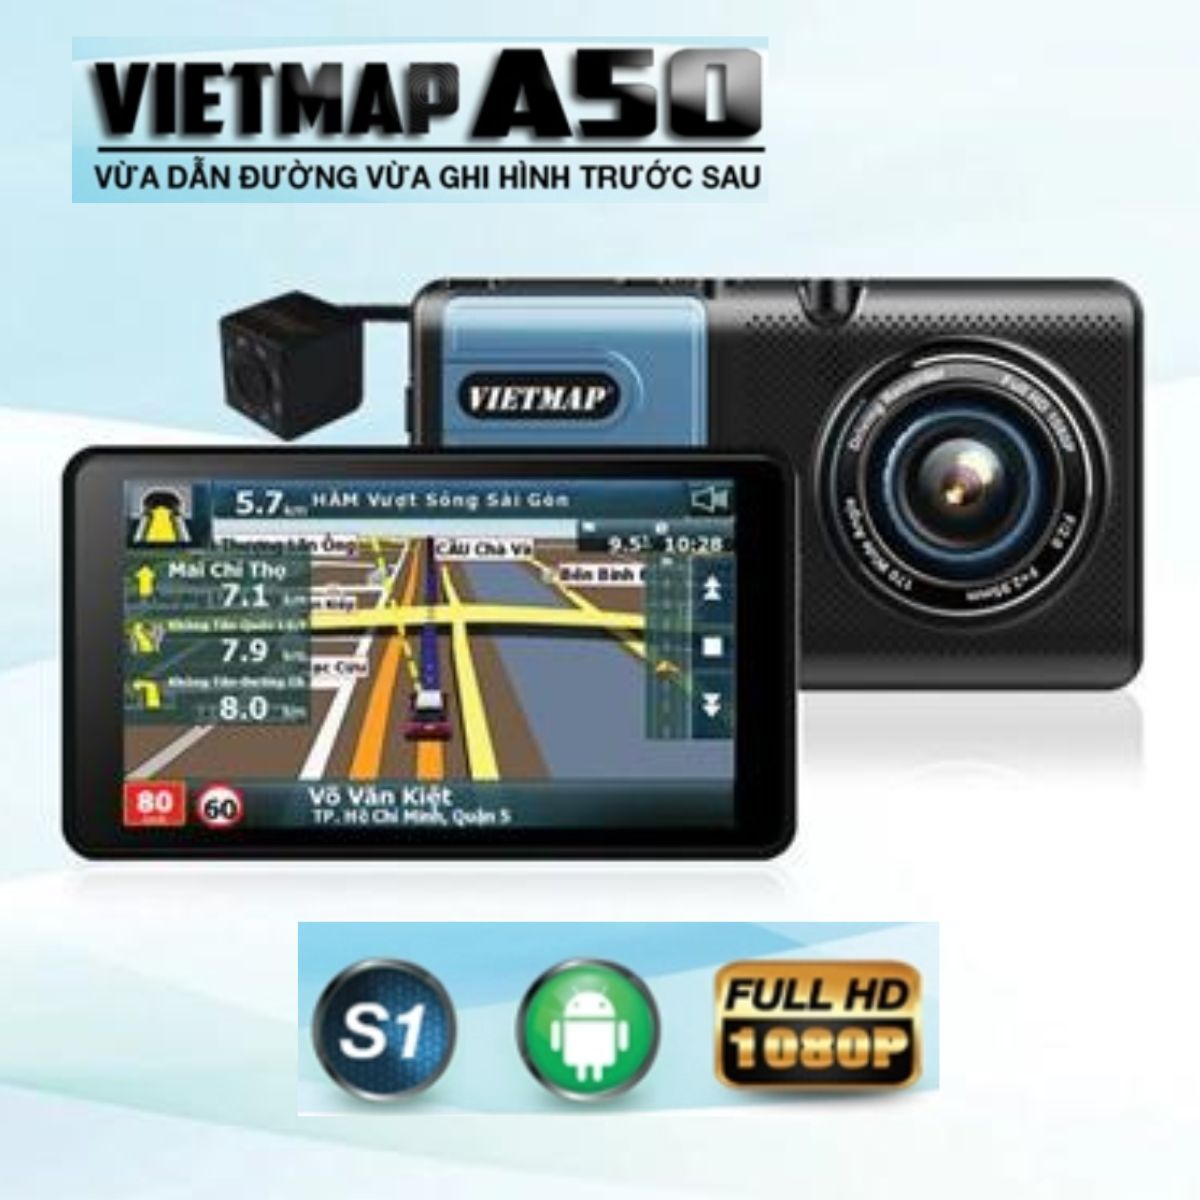 Camera hành trình android Vietmap A50 dẫn đường và ghi hình trước, sau cảnh báo tốc độ giới hạn